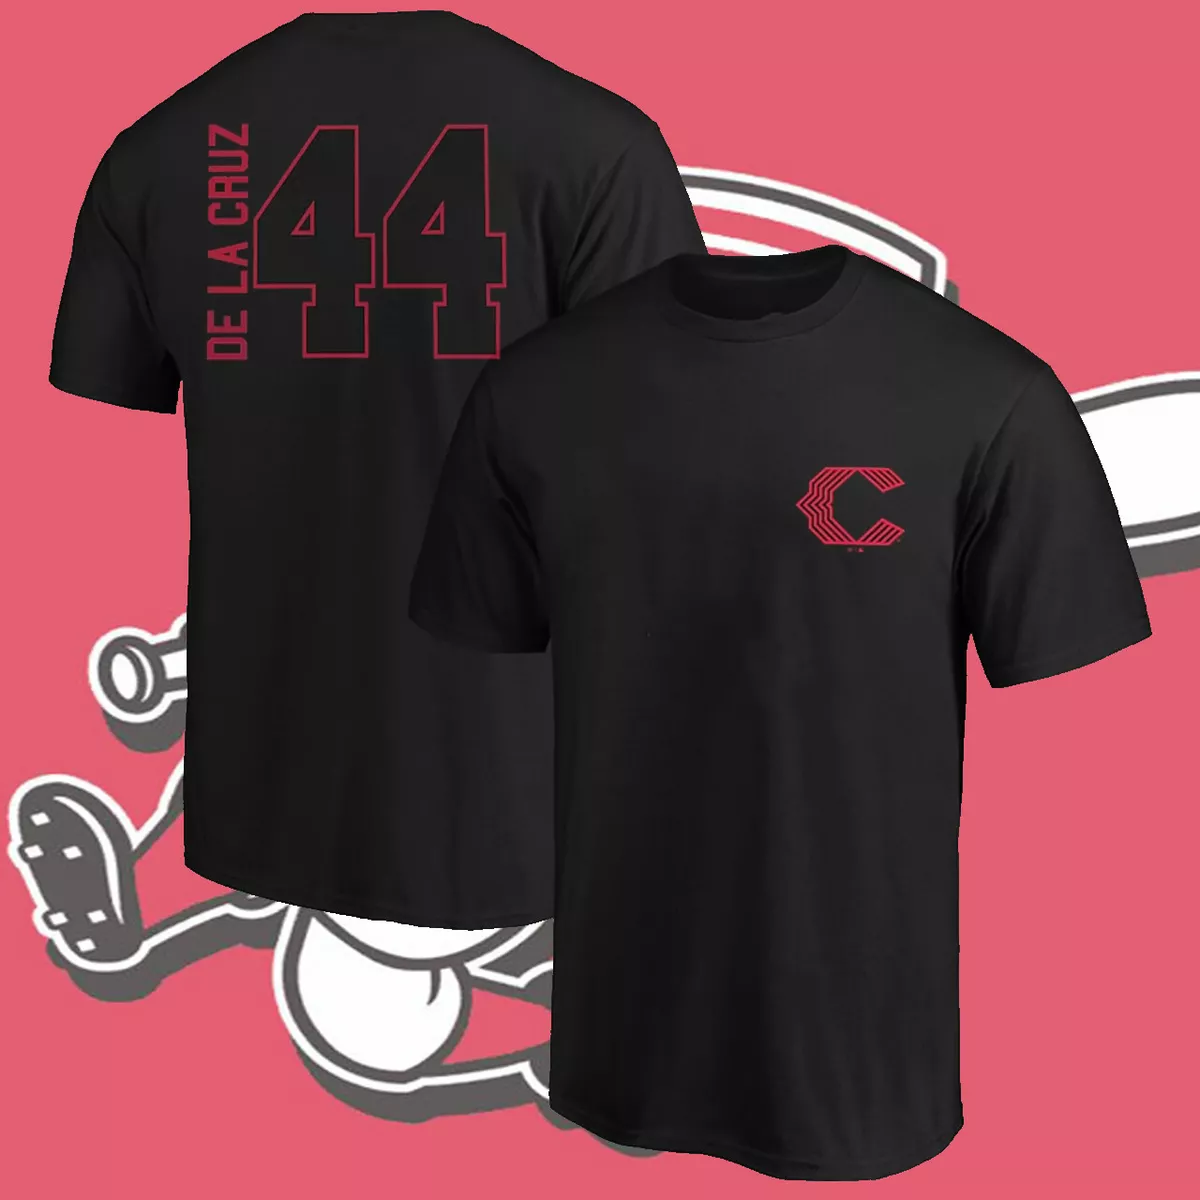 SALE!! Men's Cincinnati Team Elly De La Cruz '47 Name & Number T-Shirt S-5XL